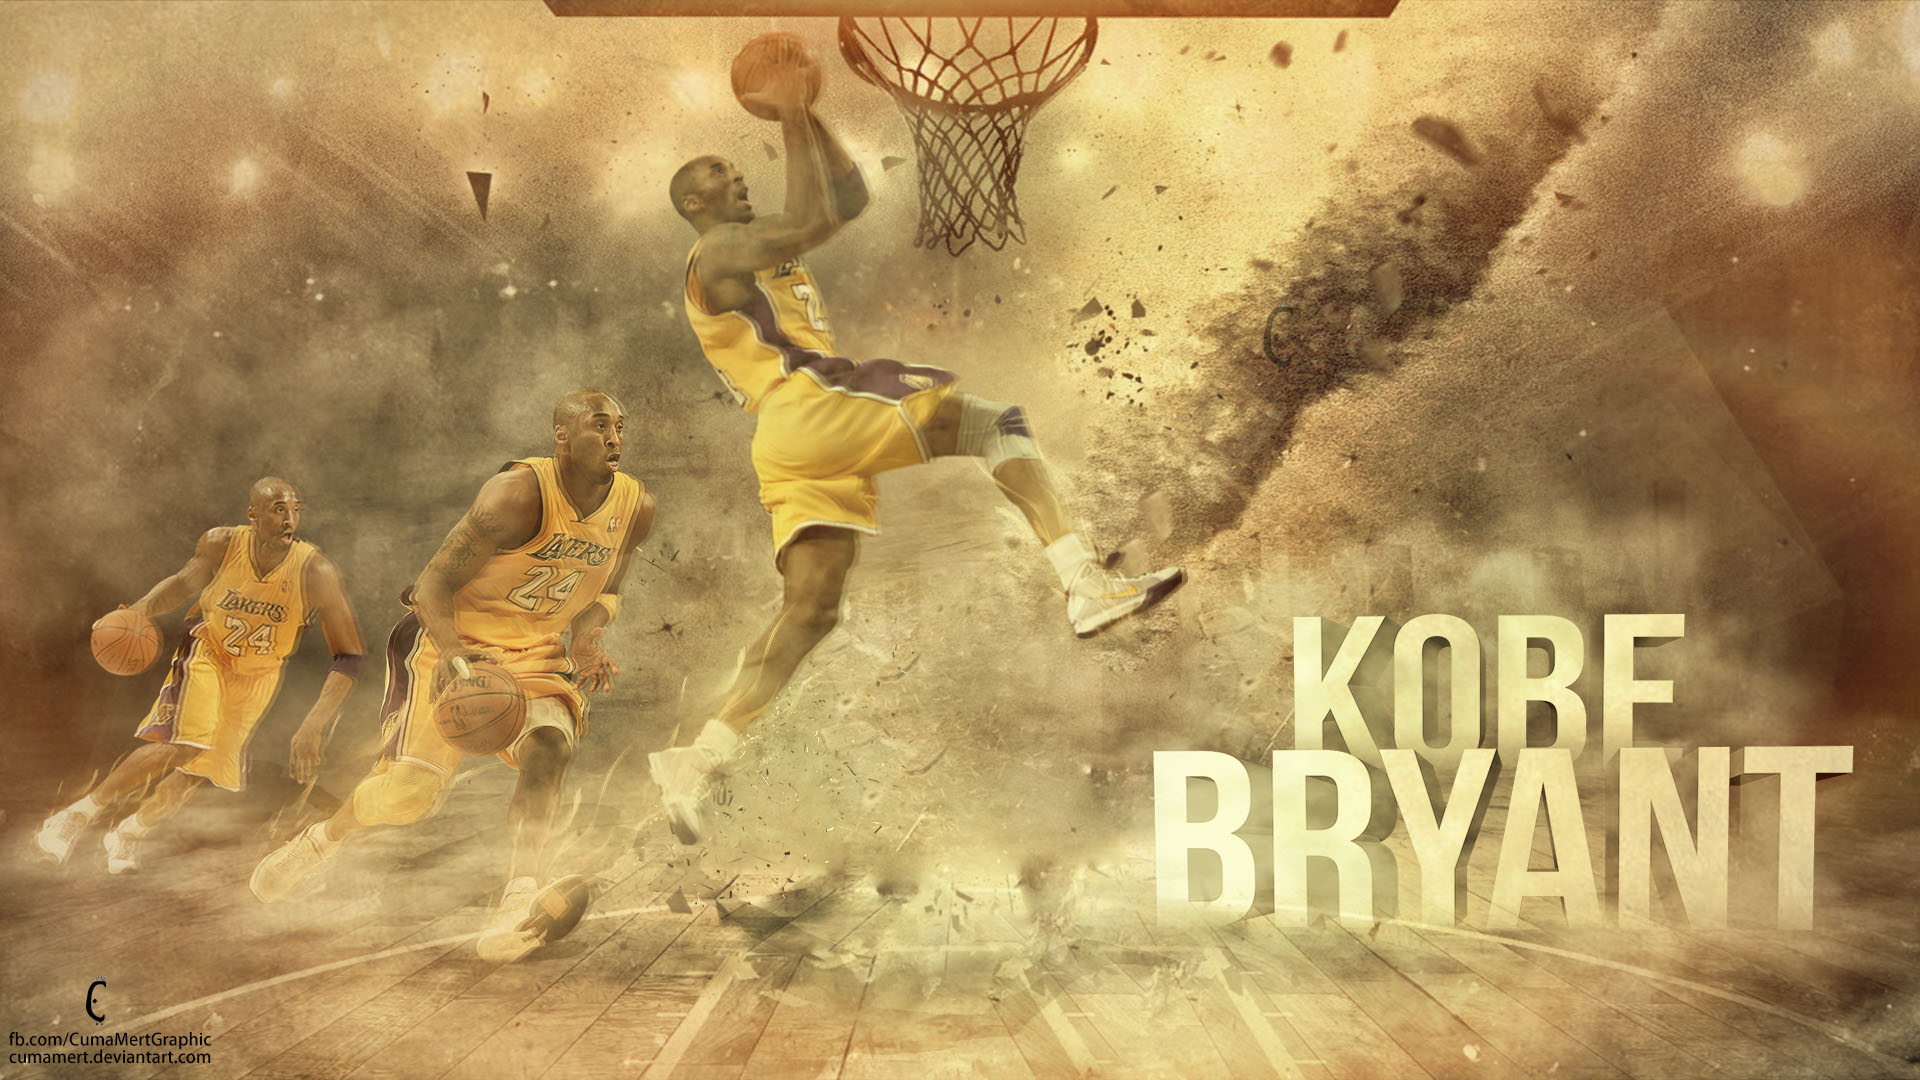 Download Black Cool Kobe Bryant La Lakers Digital Art Wallpaper